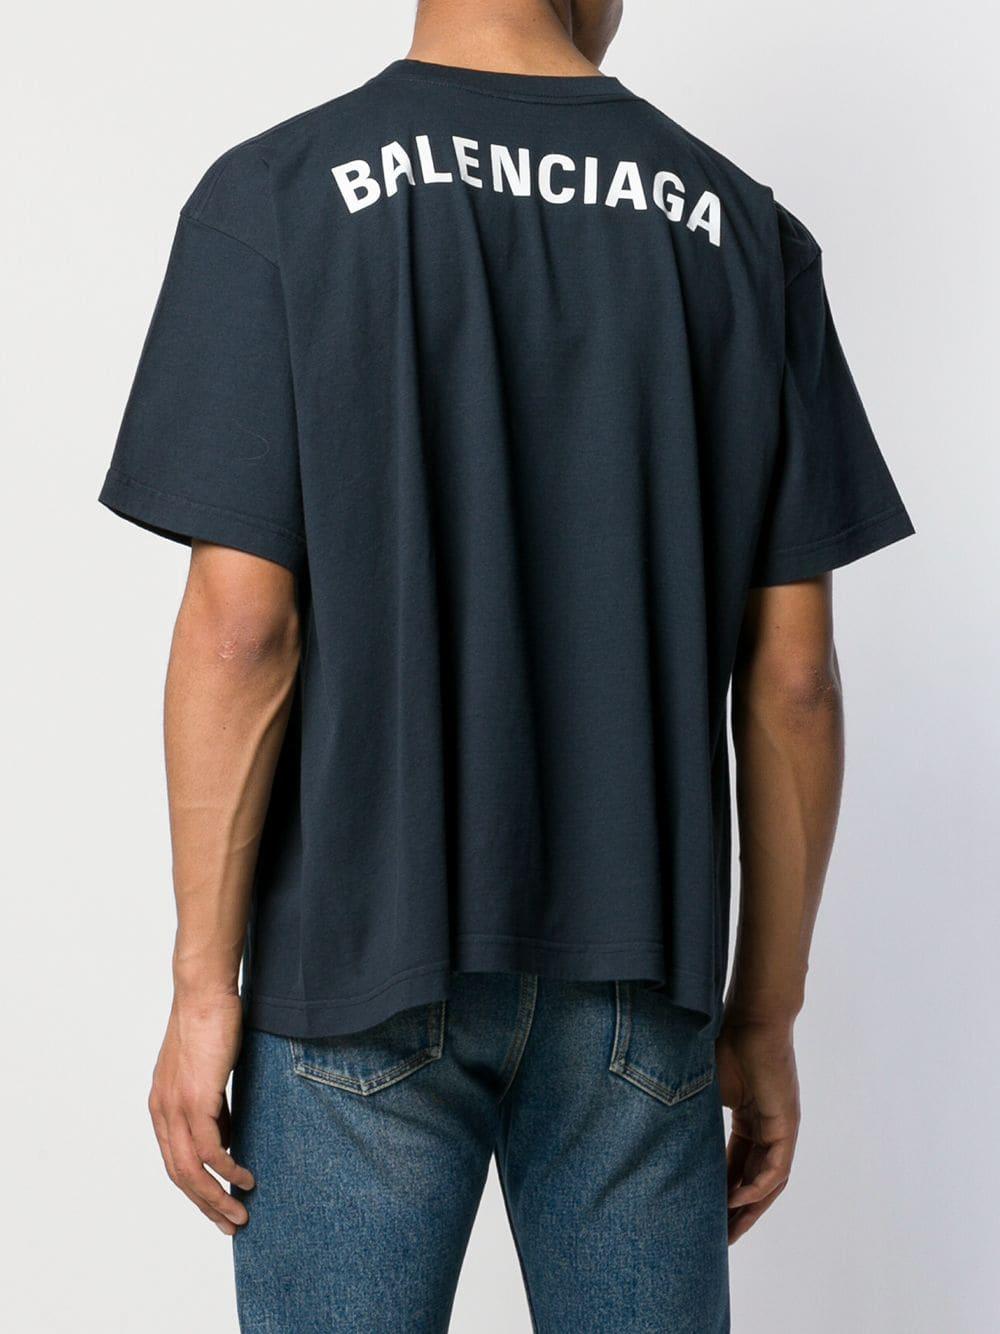 Balenciaga Backlogo T-Shirt